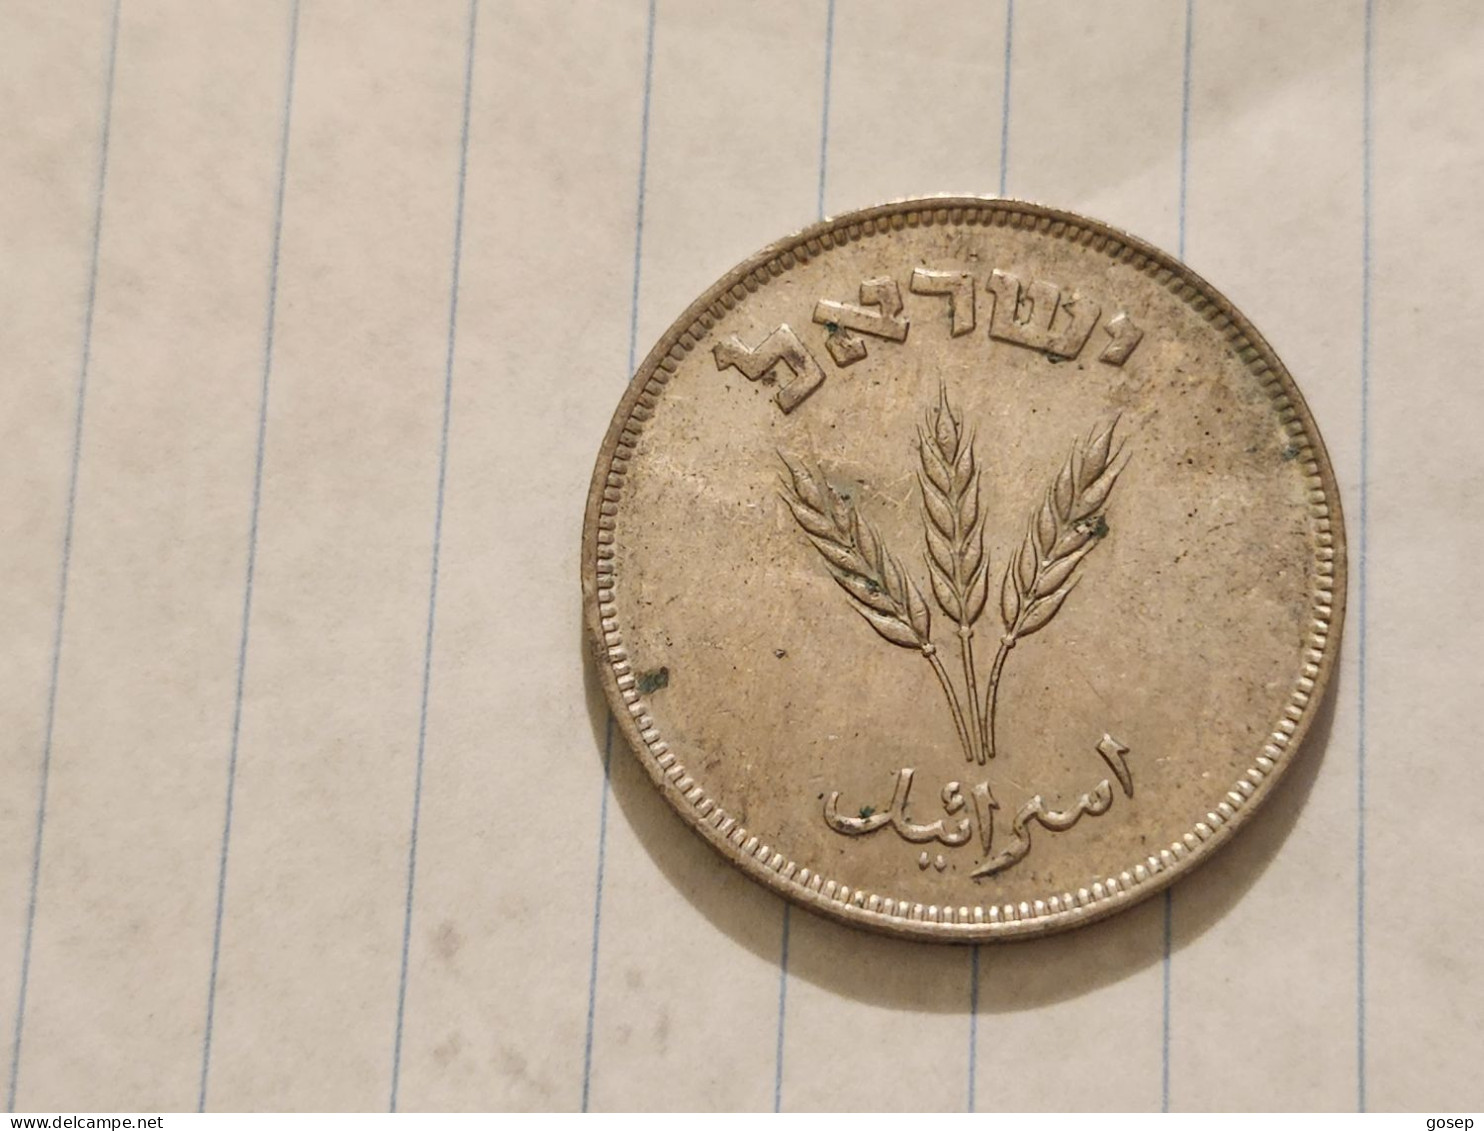 Israel-Coins-(1948-1957)-250 PRUTA-Hapanka 19-(1949)-(15)-תש"ט-NIKEL-good - Israele